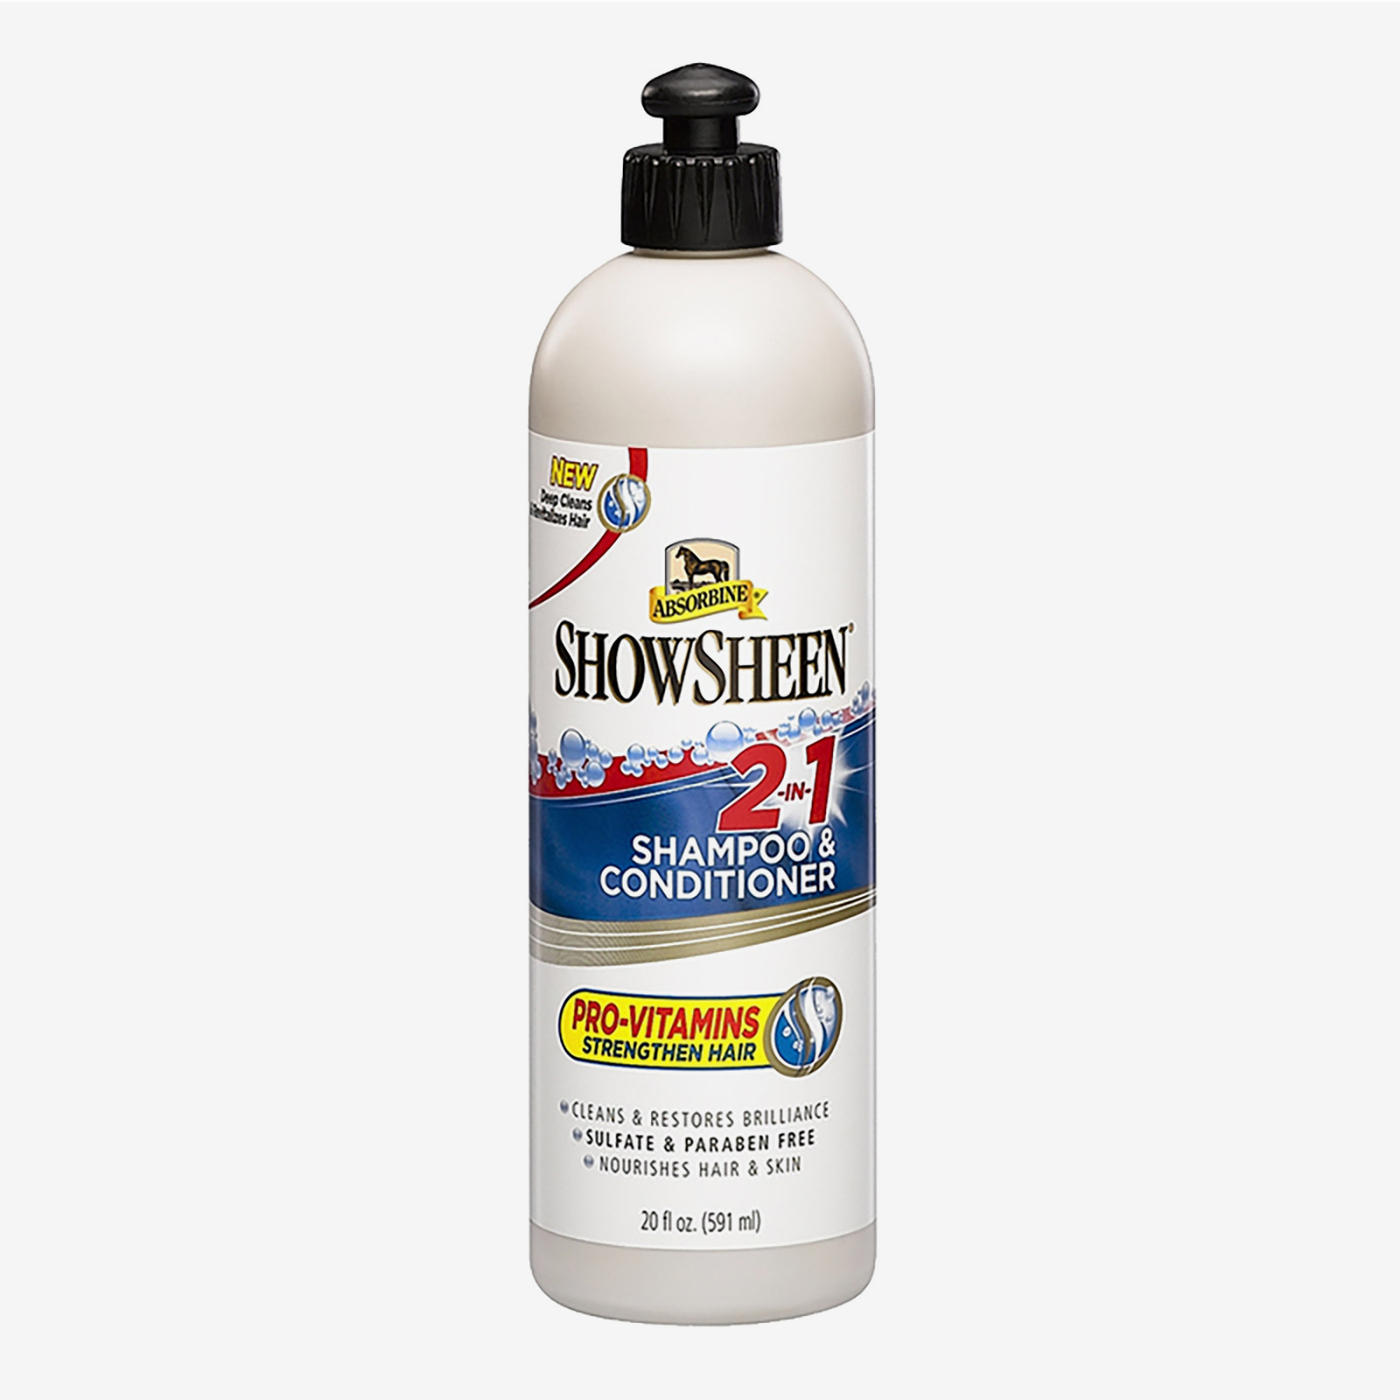 Billede af Absorbine Shampoo & Conditioner, 581 ml.